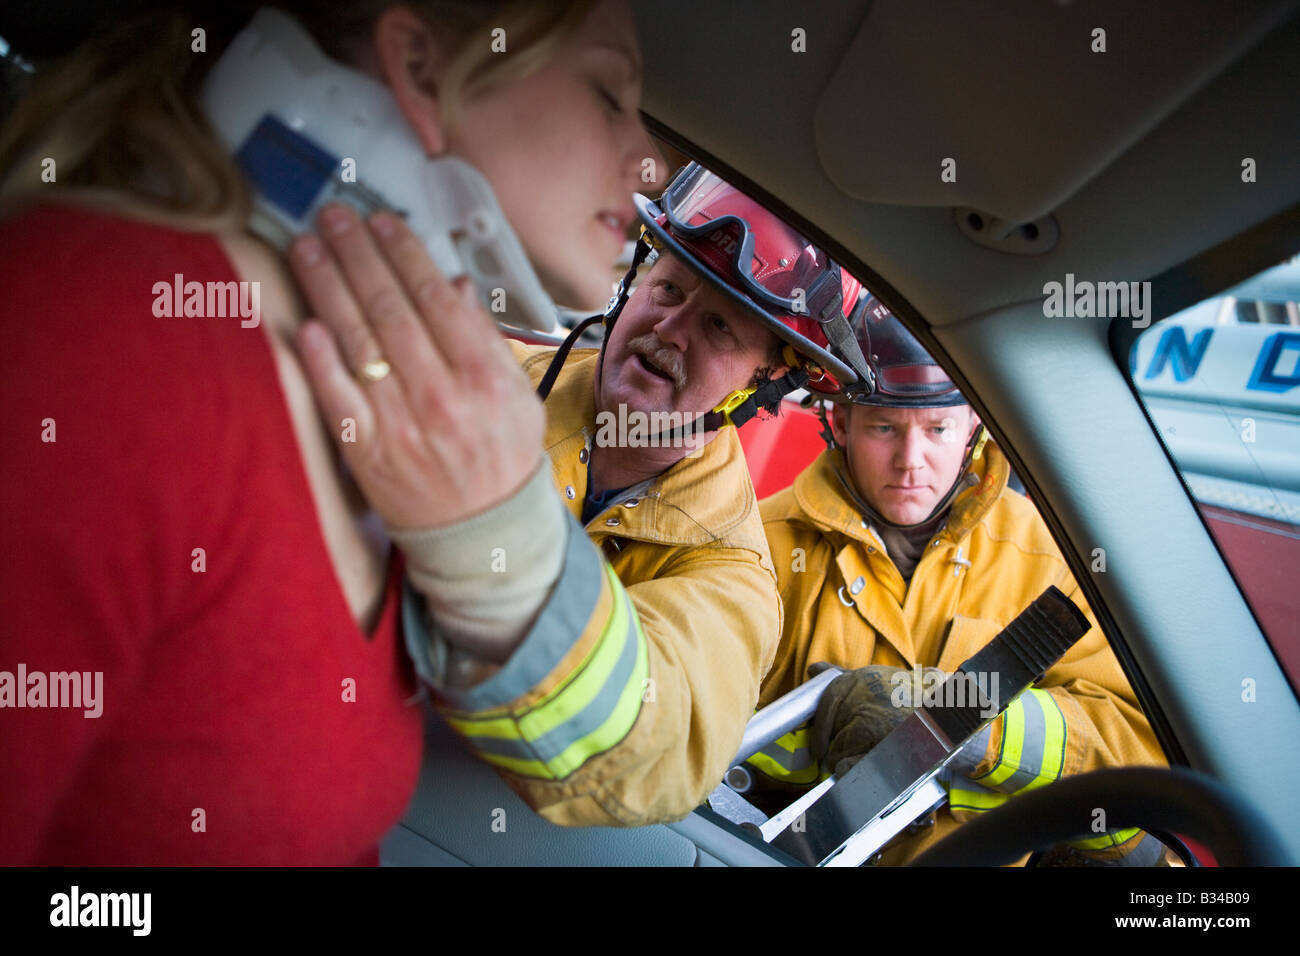 Feuerwehrmann hilft Frau mit Nackenschutz, während ein anderer Feuerwehrmann die Backen des Lebens auf einer Autotür (Tiefenschärfe verwendet) Stockfoto